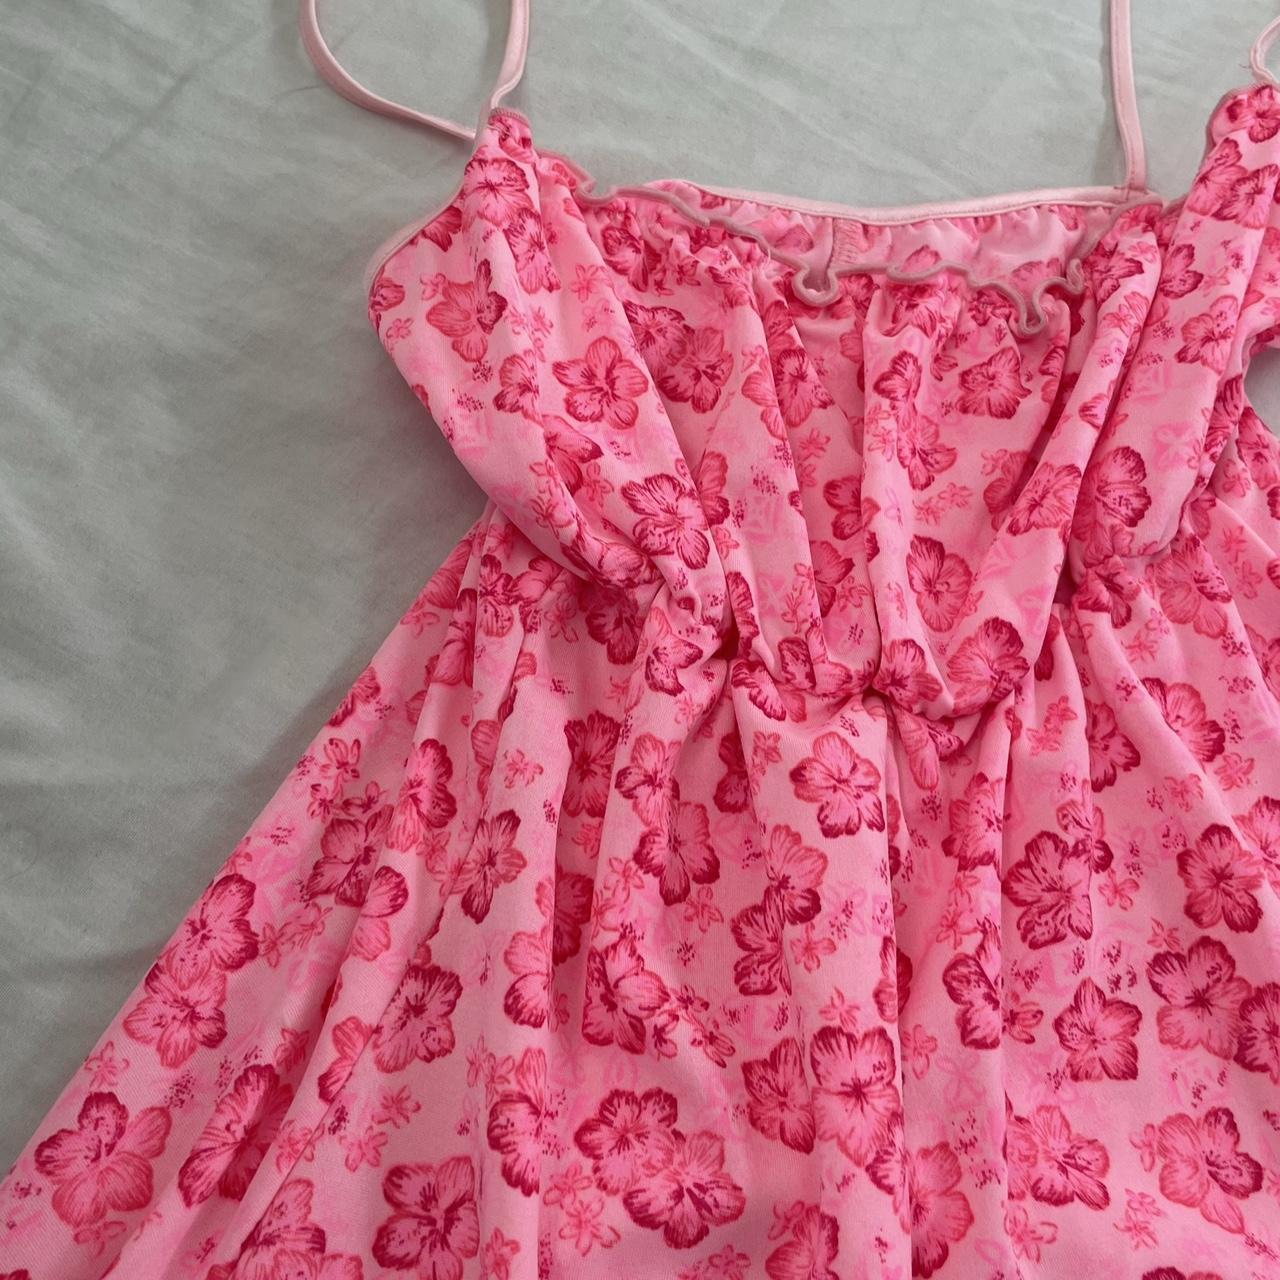 Vintage Y2K floral pink babydoll summer dress 🌸 🏹... - Depop